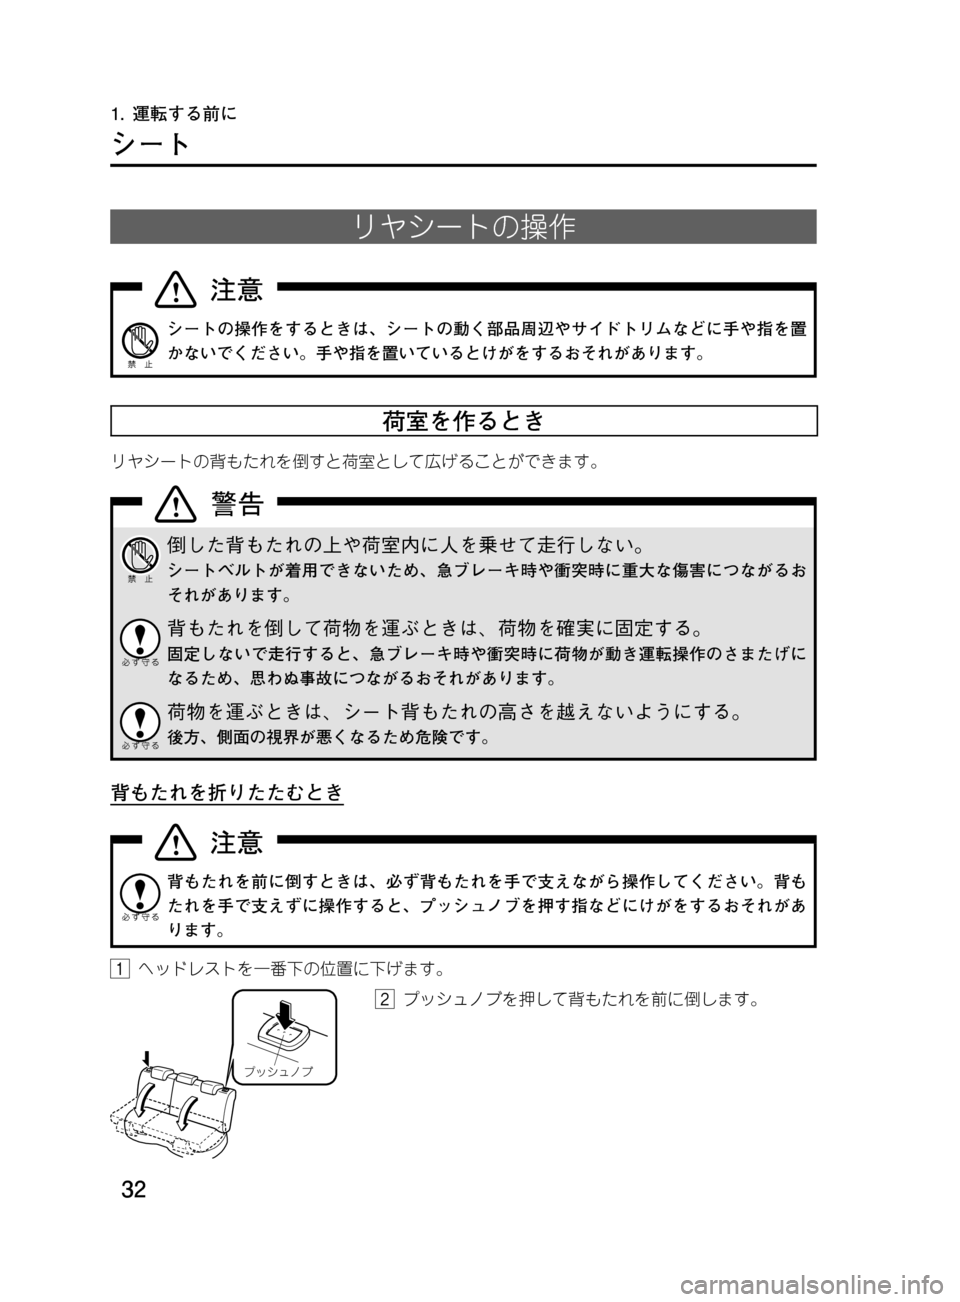 MAZDA MODEL DEMIO 2011  デミオ｜取扱説明書 (in Japanese) ��
��P�S�N��/�P���% 